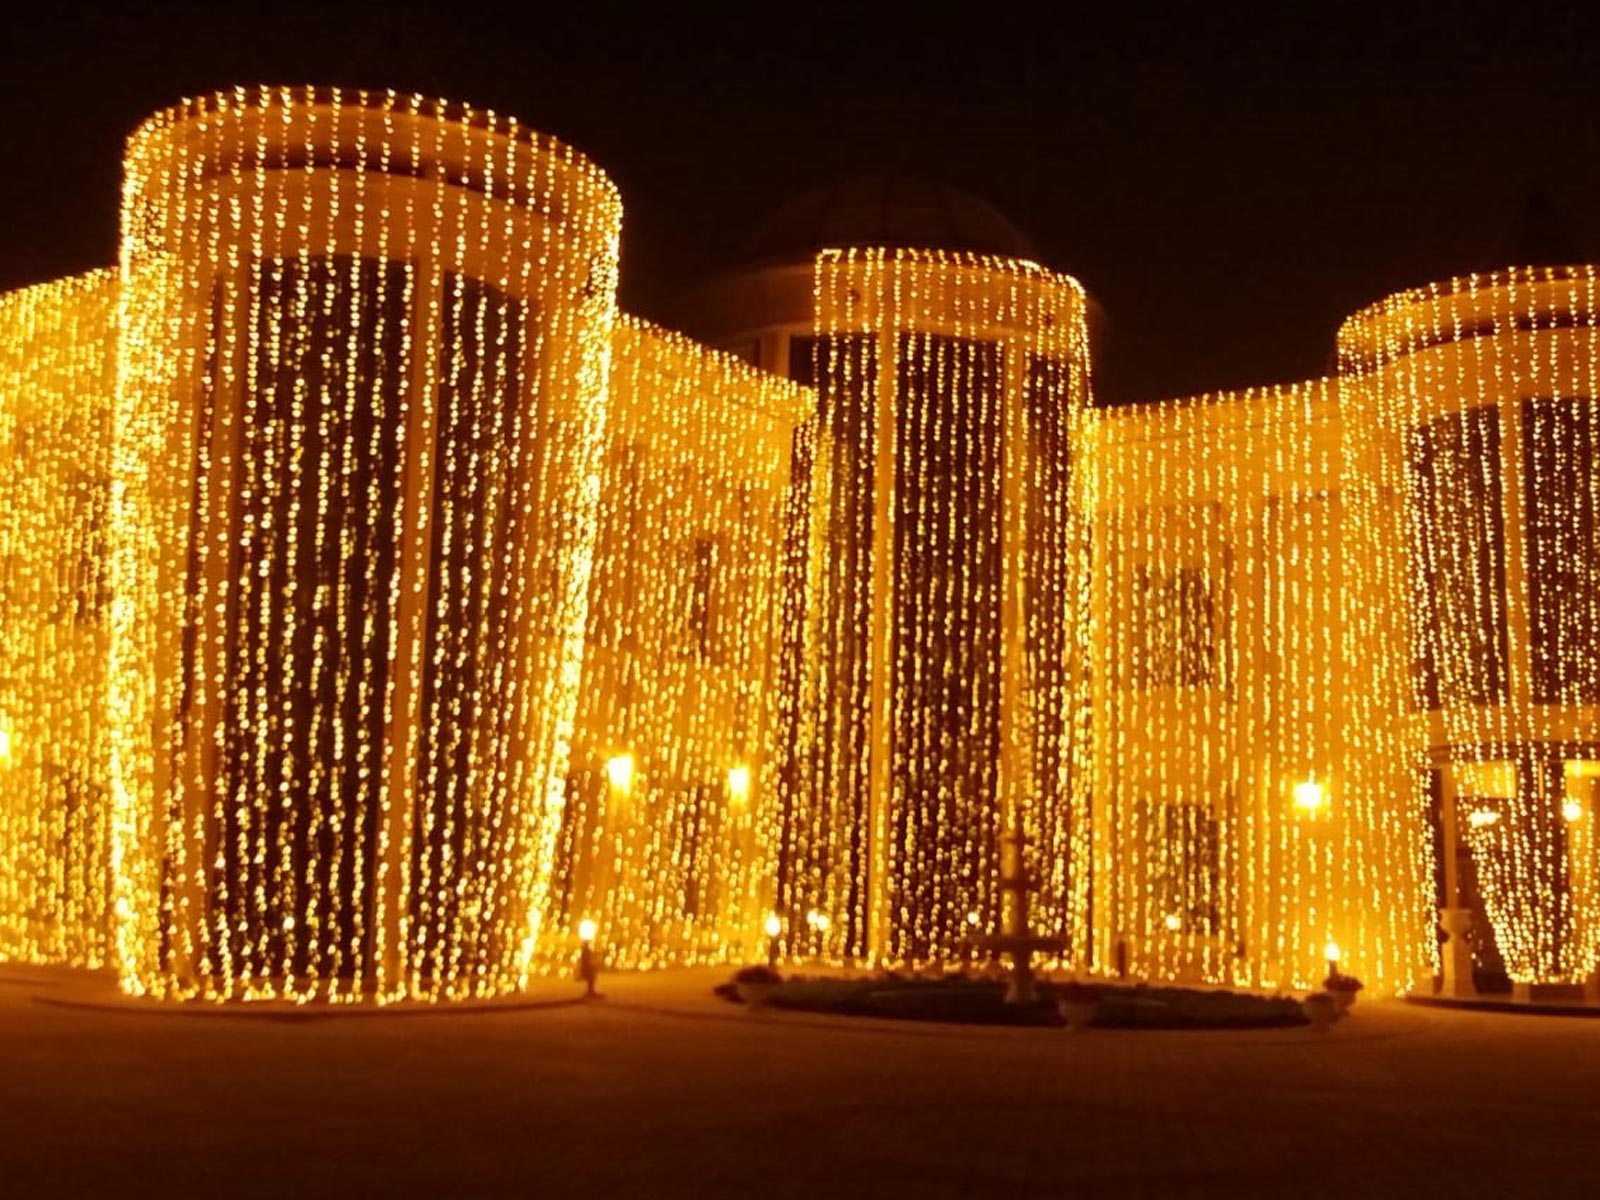 Lighting-and-Sound-Systems-Doha-Qatar